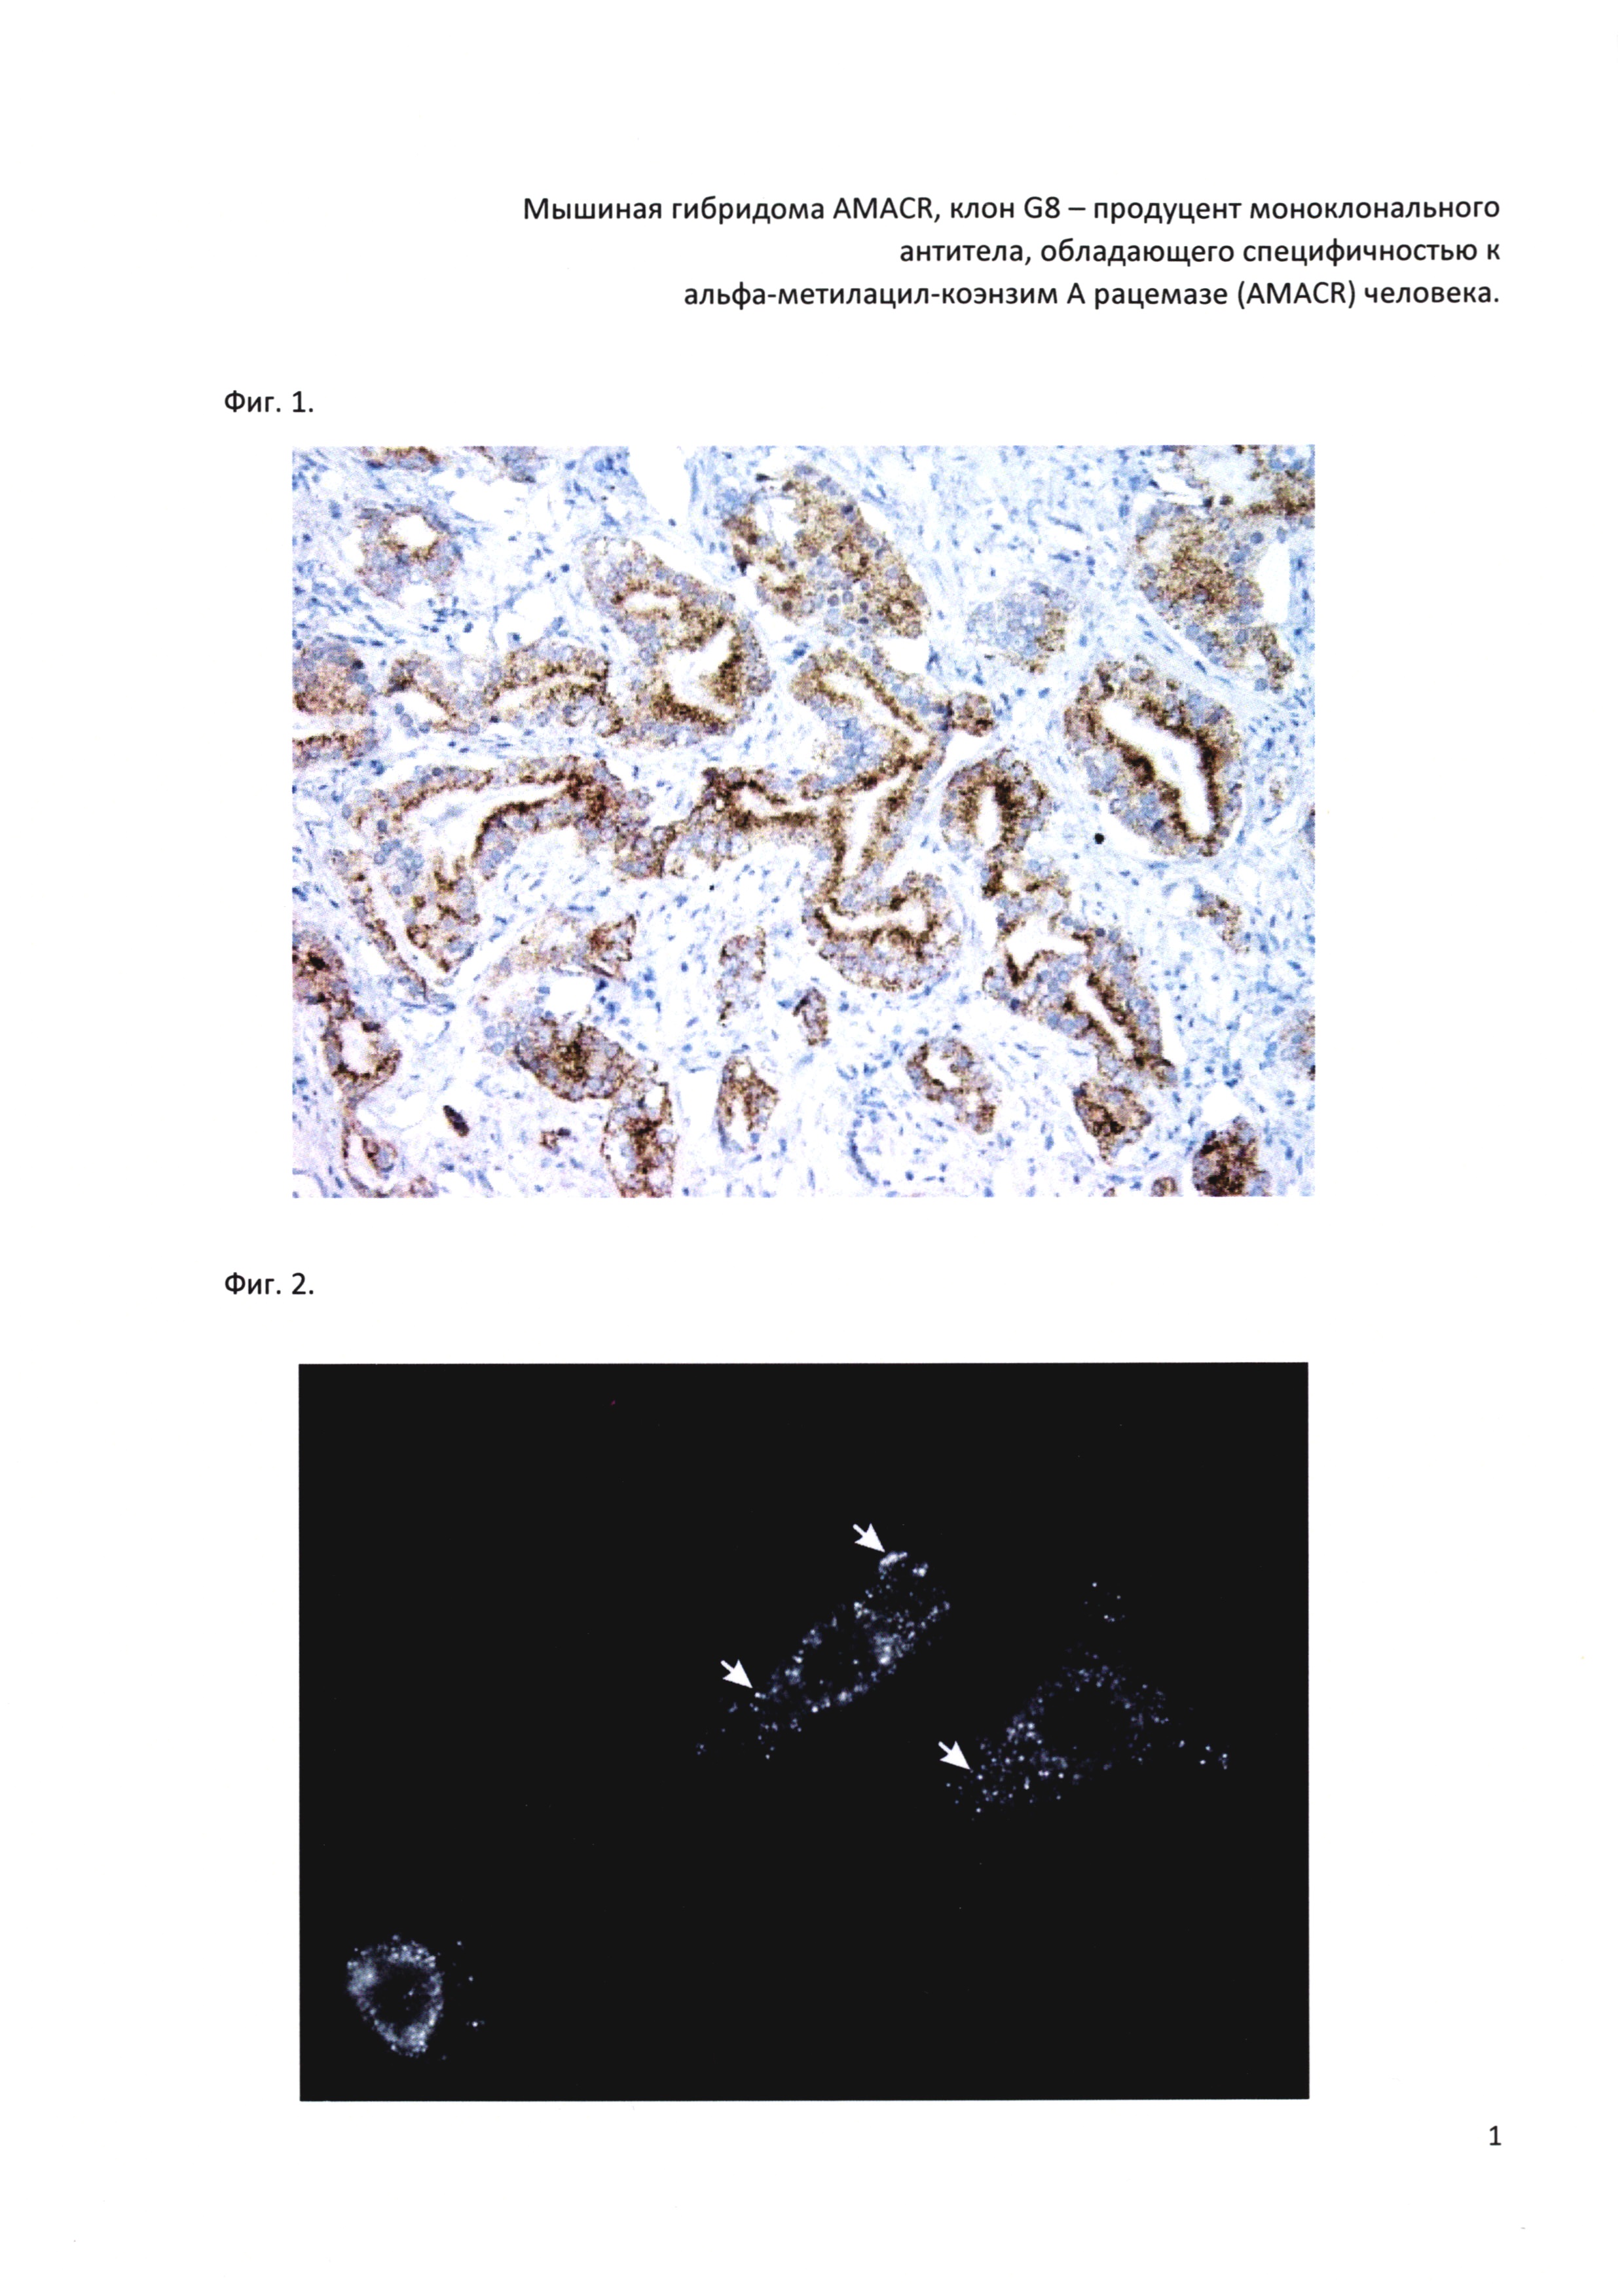 Мышиная гибридома AMACR, клон G8 - продуцент моноклонального антитела, обладающего специфичностью к альфа-метилацил-коэнзим A рацемазе (AMACR) человека